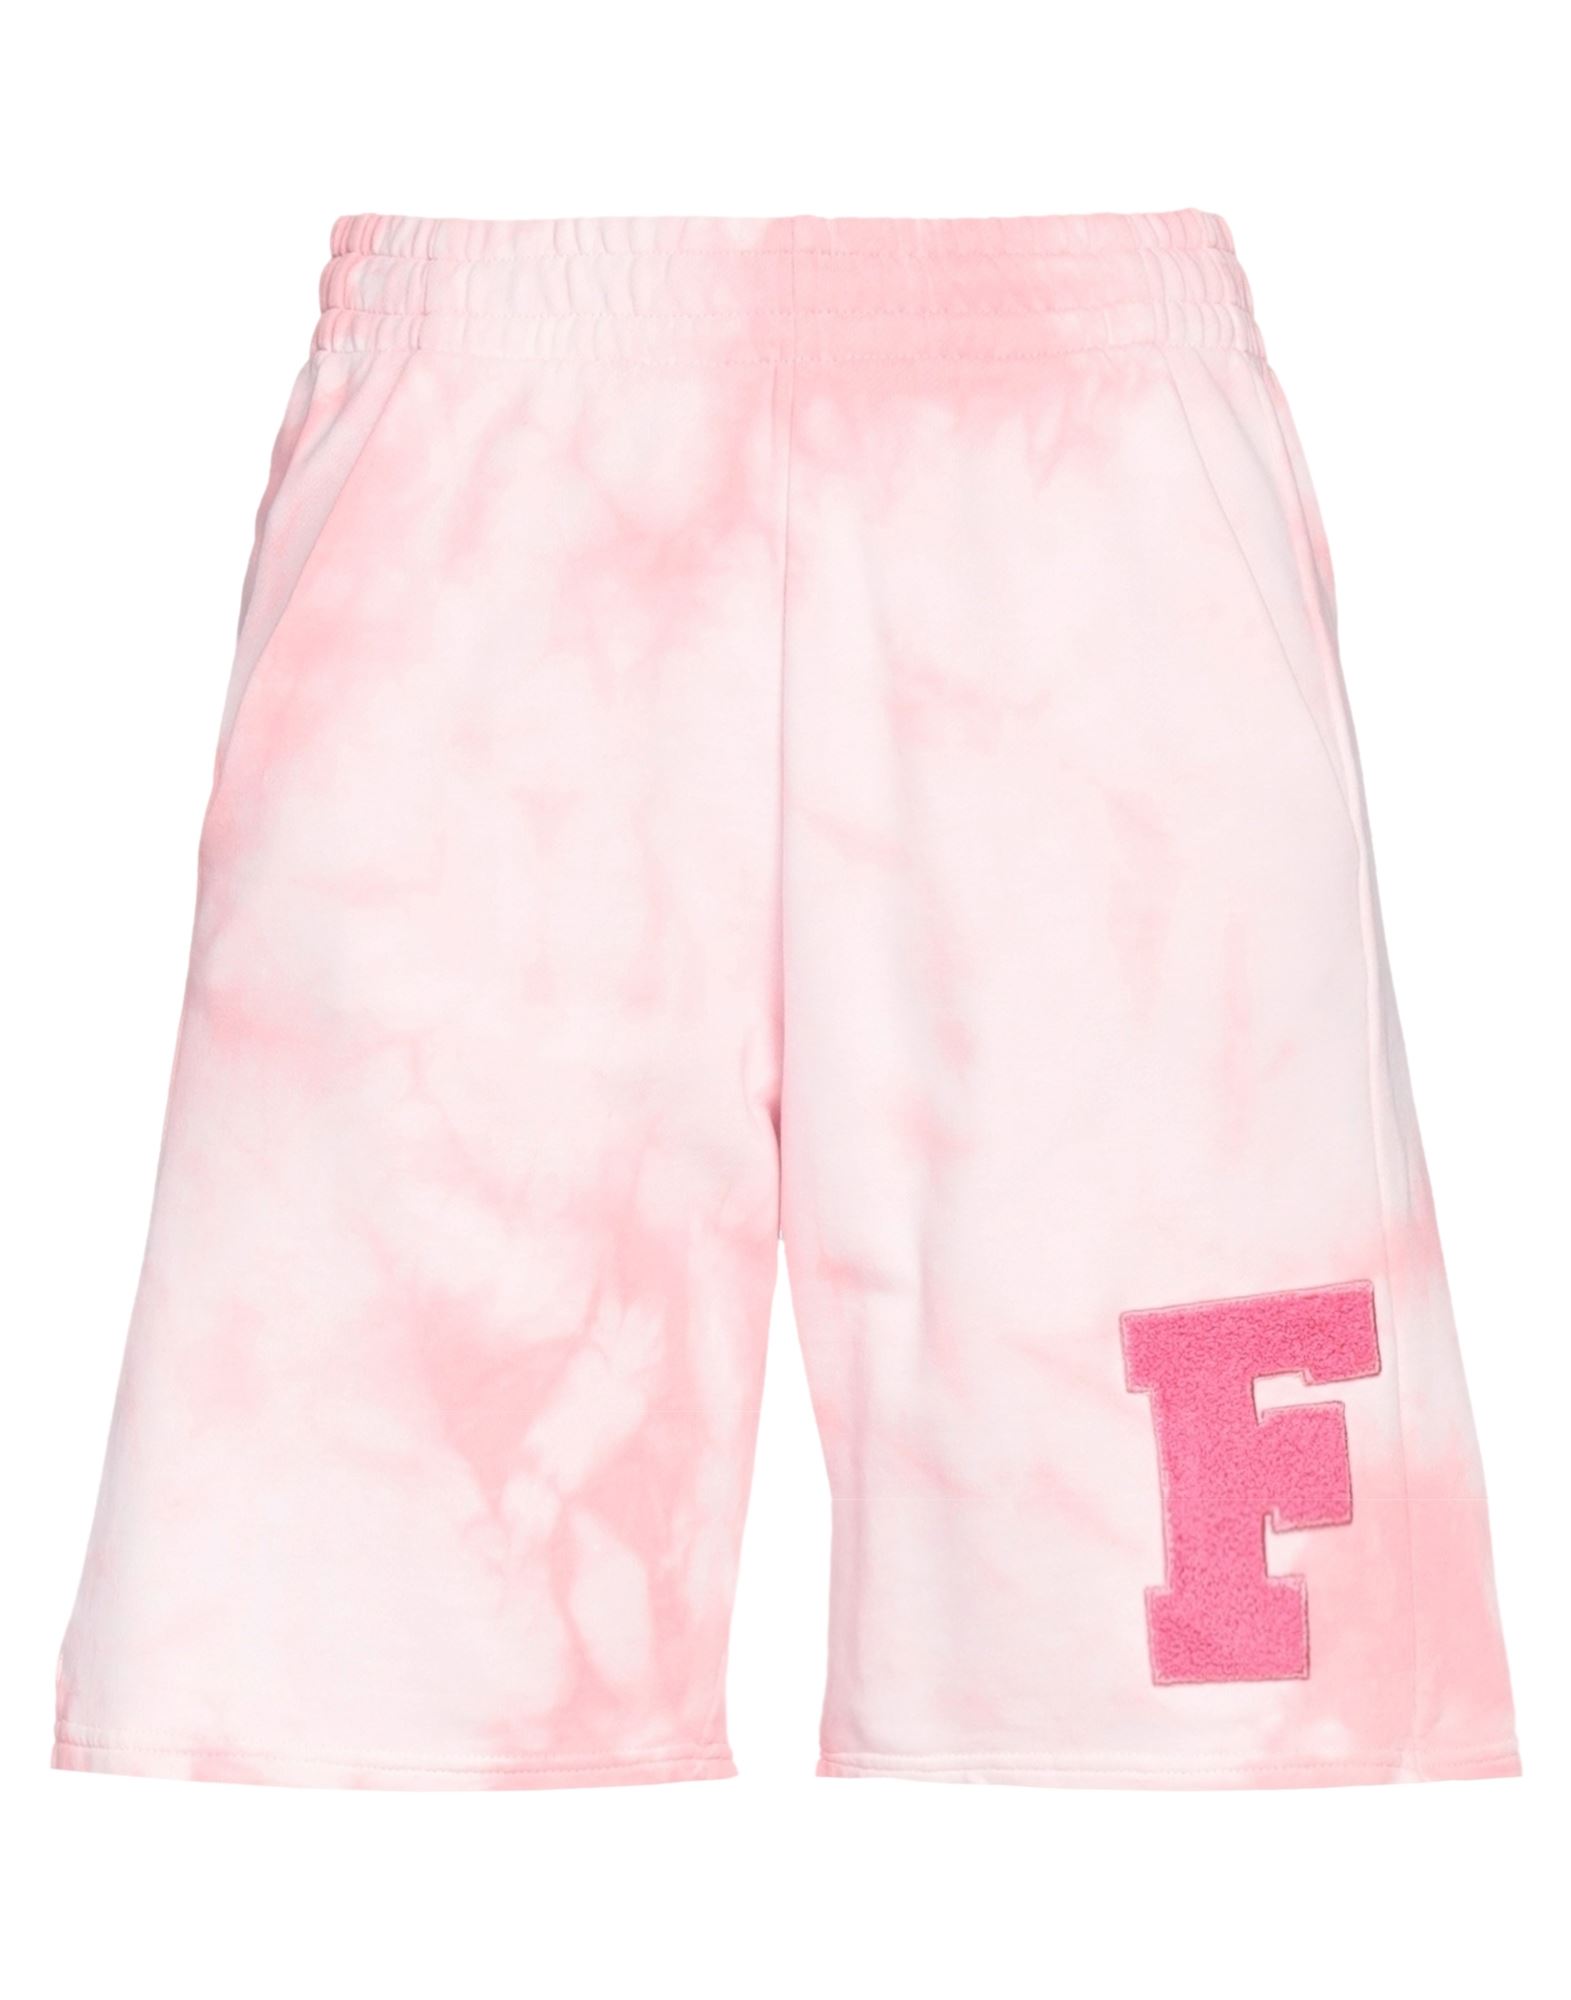 Freddy Woman Shorts & Bermuda Shorts Pink Size M Cotton